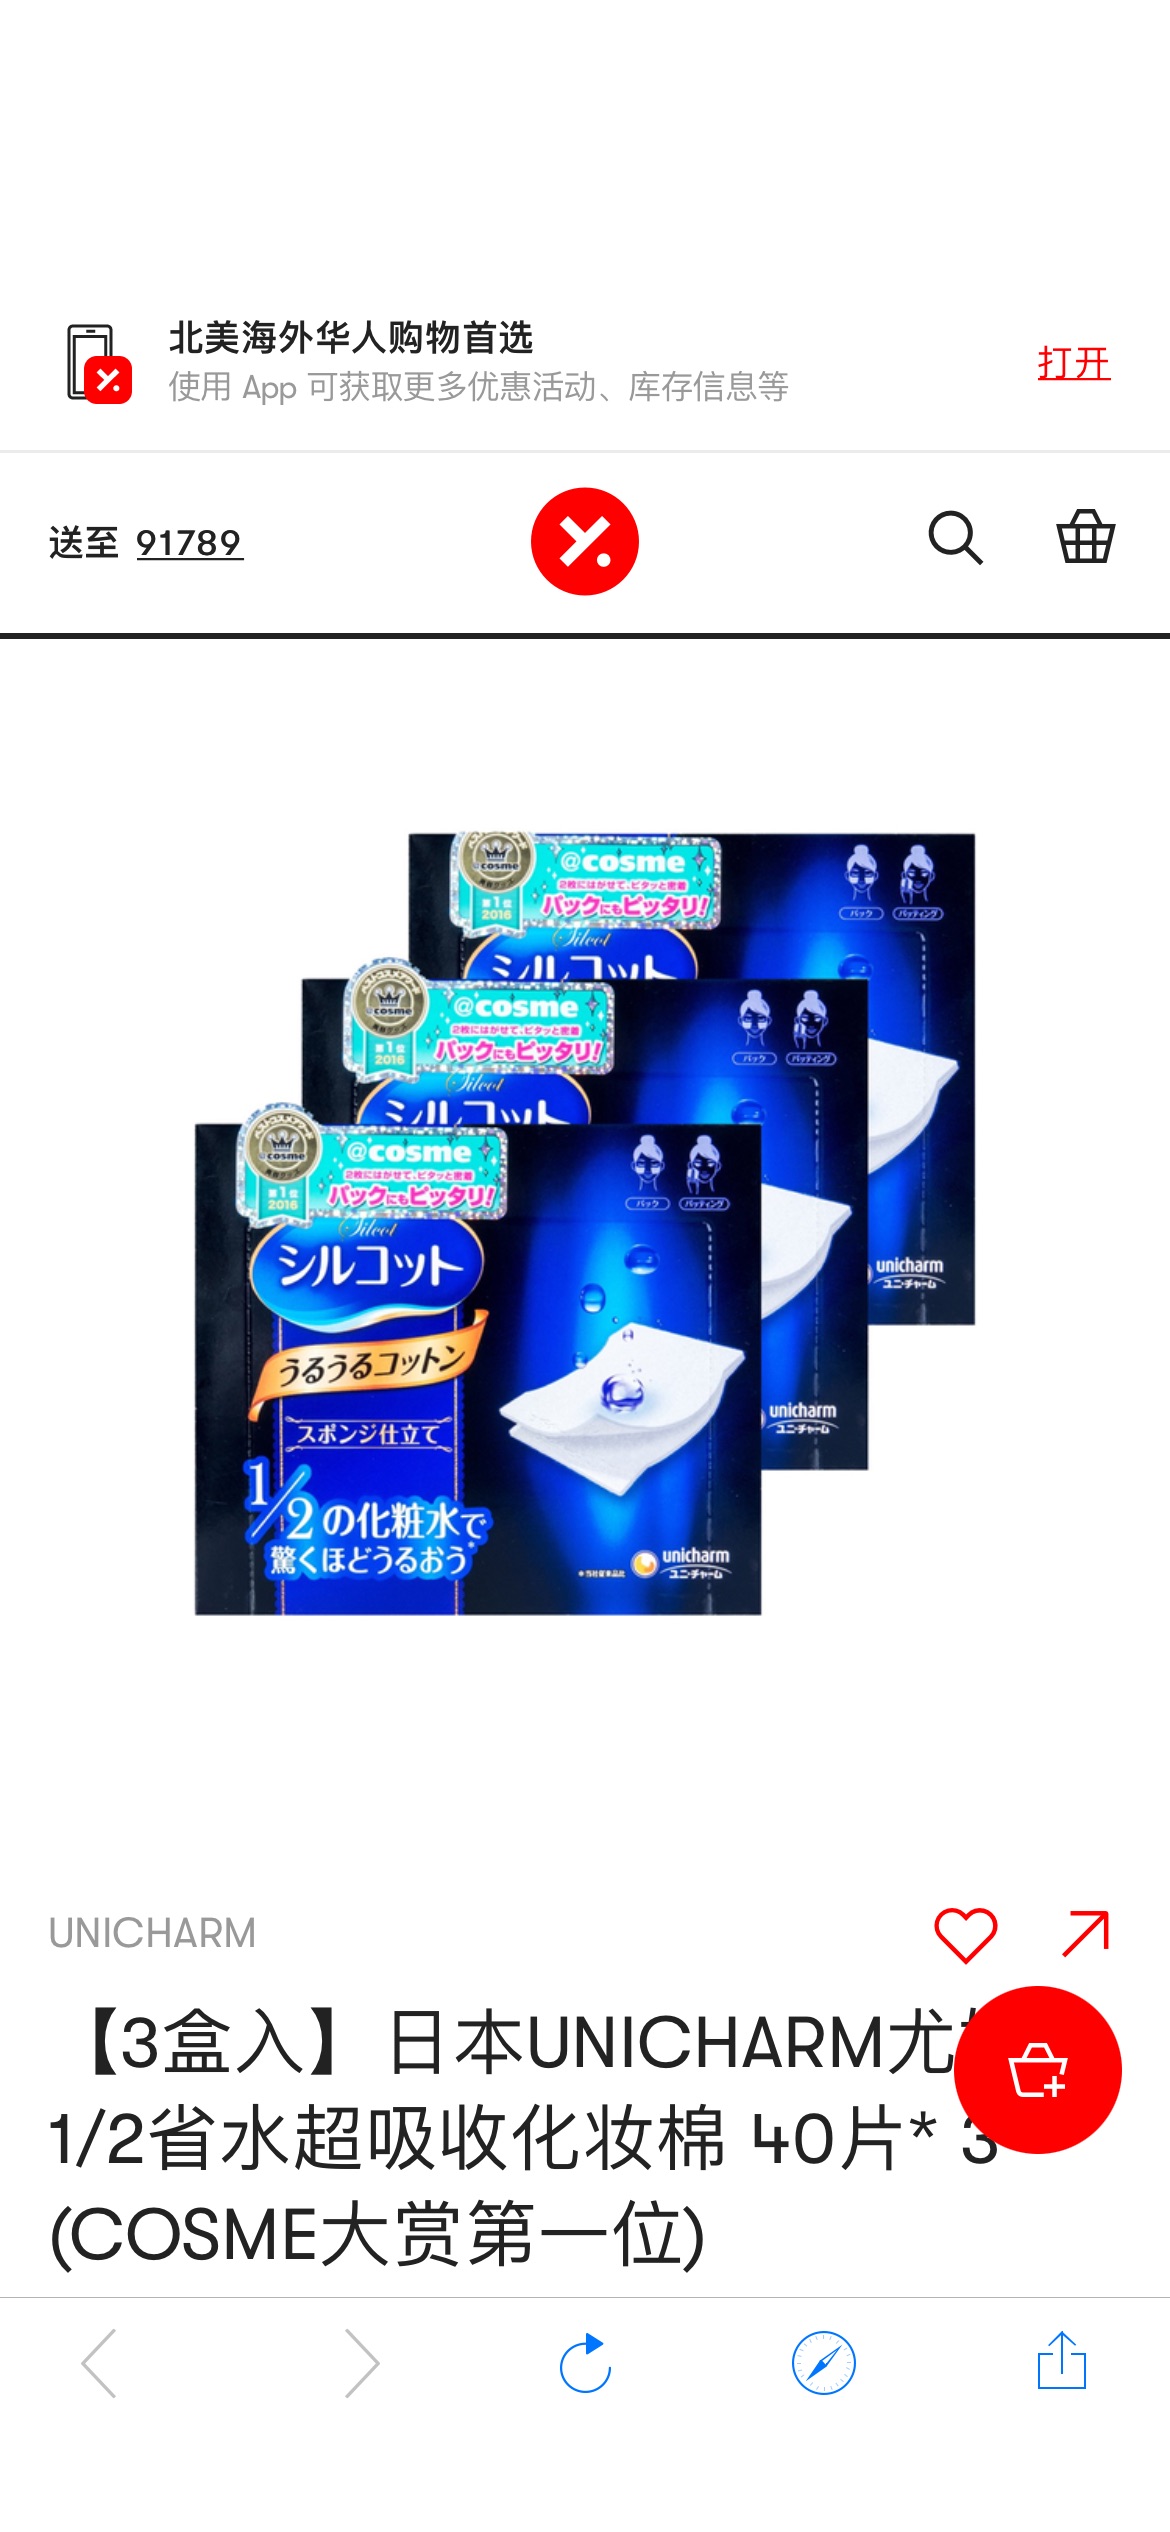 【3盒入】日本UNICHARM尤妮佳 1/2省水超吸收化妆棉 40片* 3 (COSME大赏第一位) - 亚米